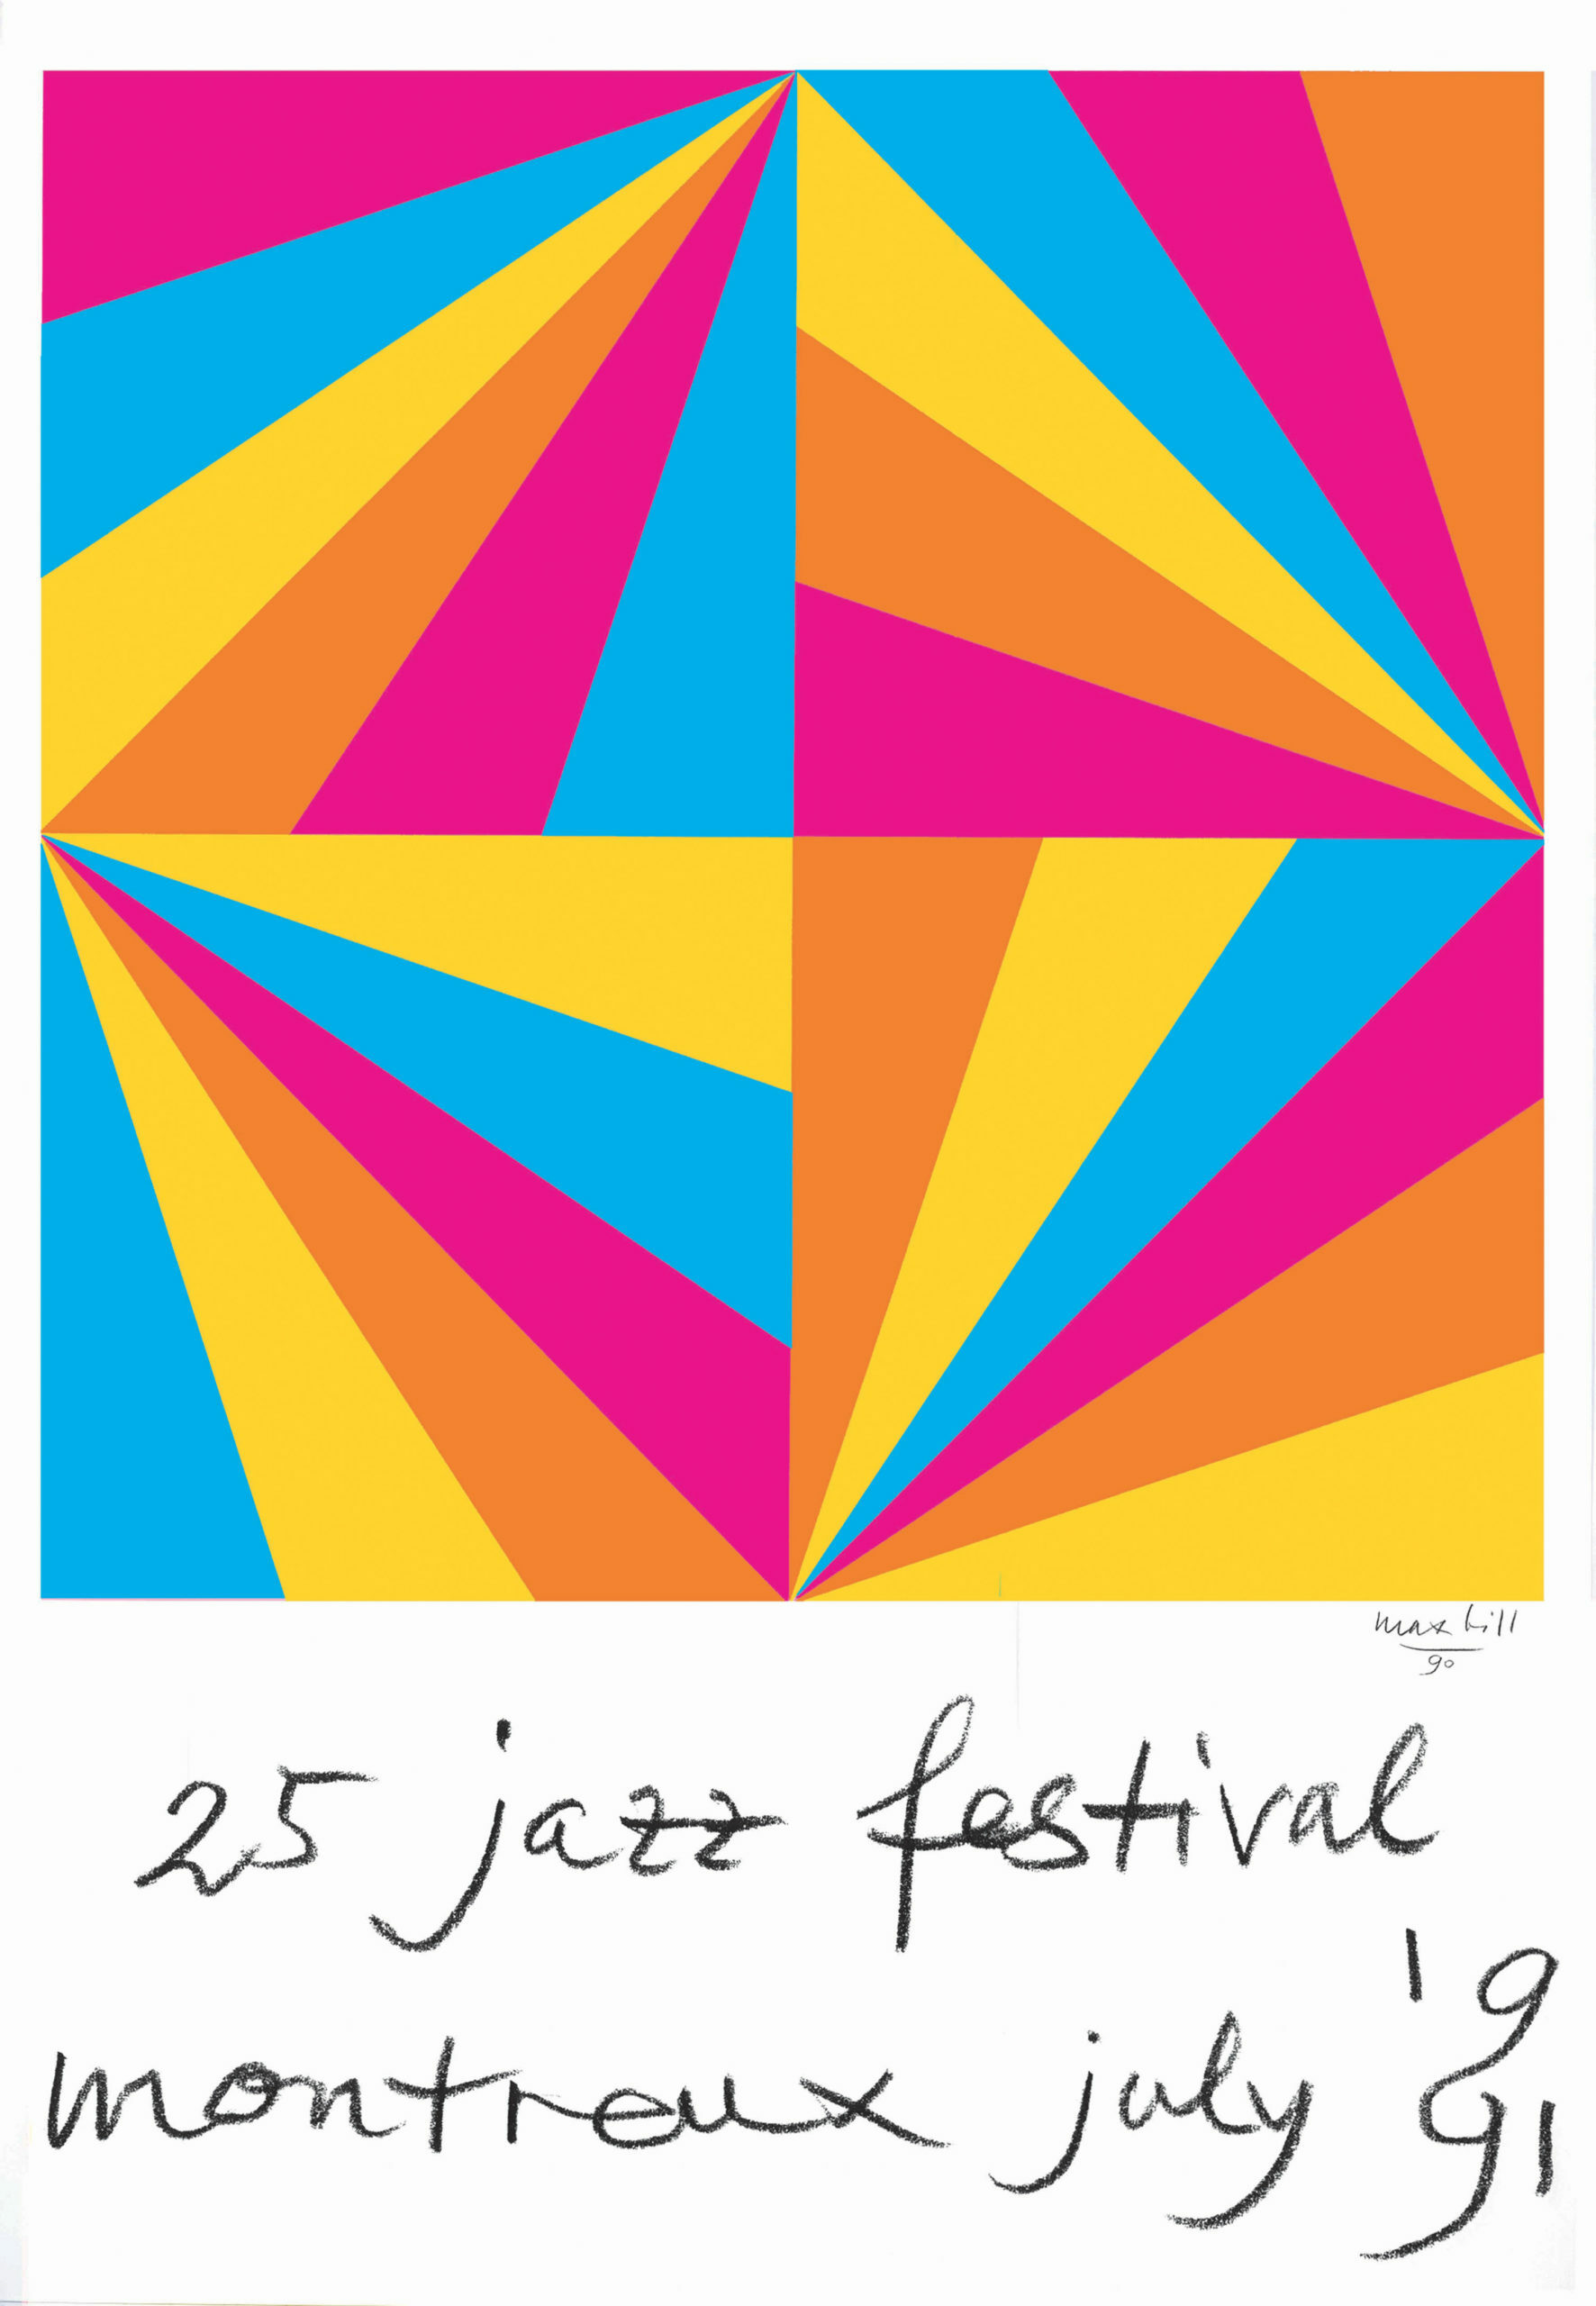 Fondation du Festival de Jazz de Montreux © 1991 – Max Bill